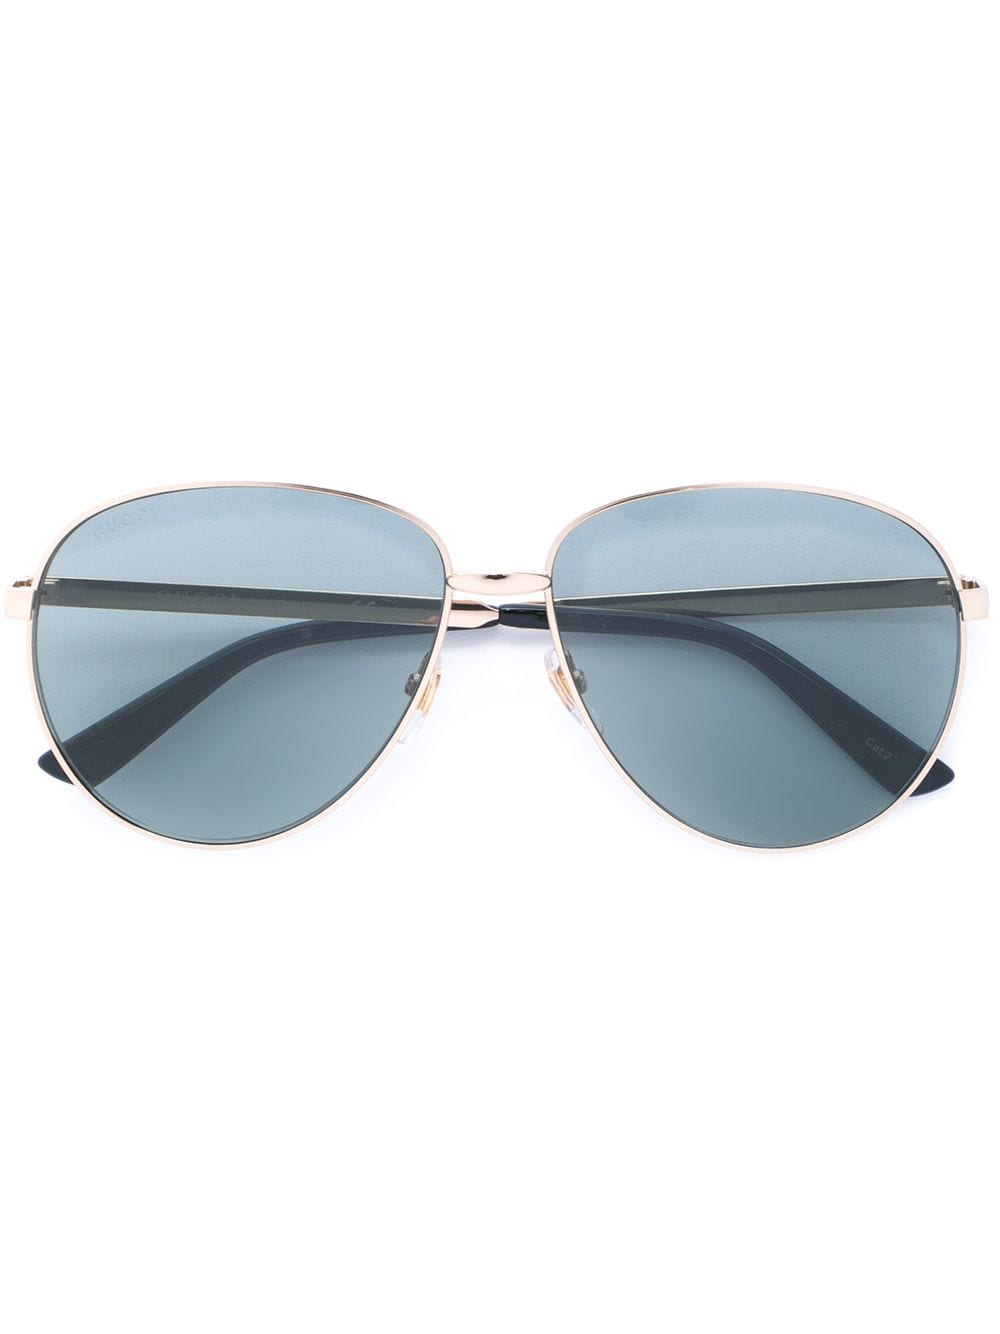 фото Gucci Eyewear солнцезащитные очки авиаторы